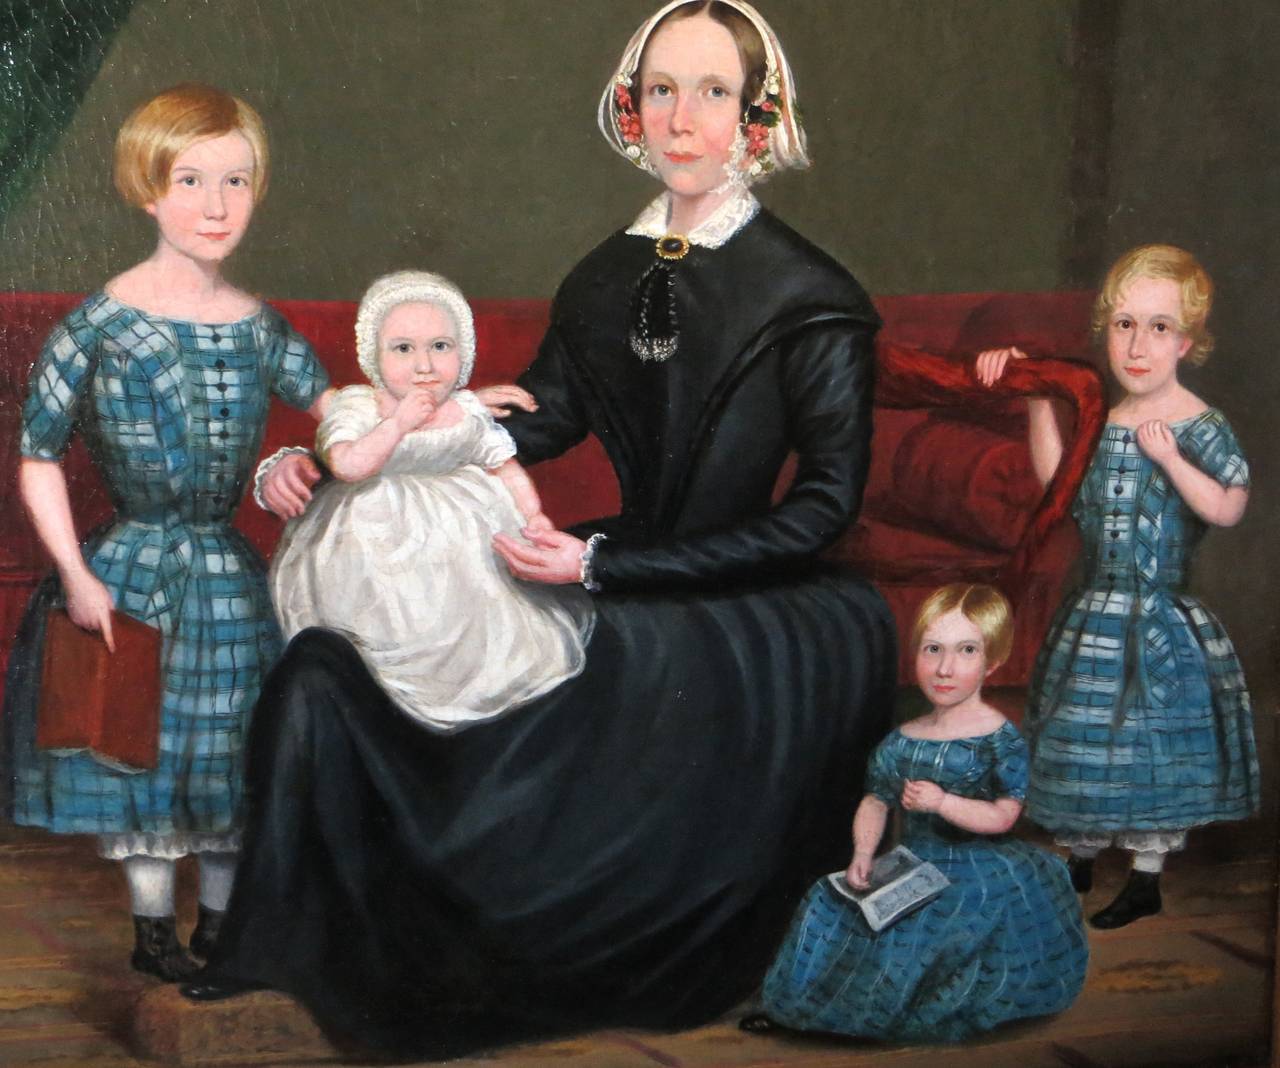 Ce portrait américain est passé dans la même famille depuis les années 1830 jusqu'en juillet 2012, date à laquelle je l'ai acquis auprès d'un exécuteur testamentaire de l'Oregon. La première famille avait vécu en Nouvelle-Angleterre. Il est